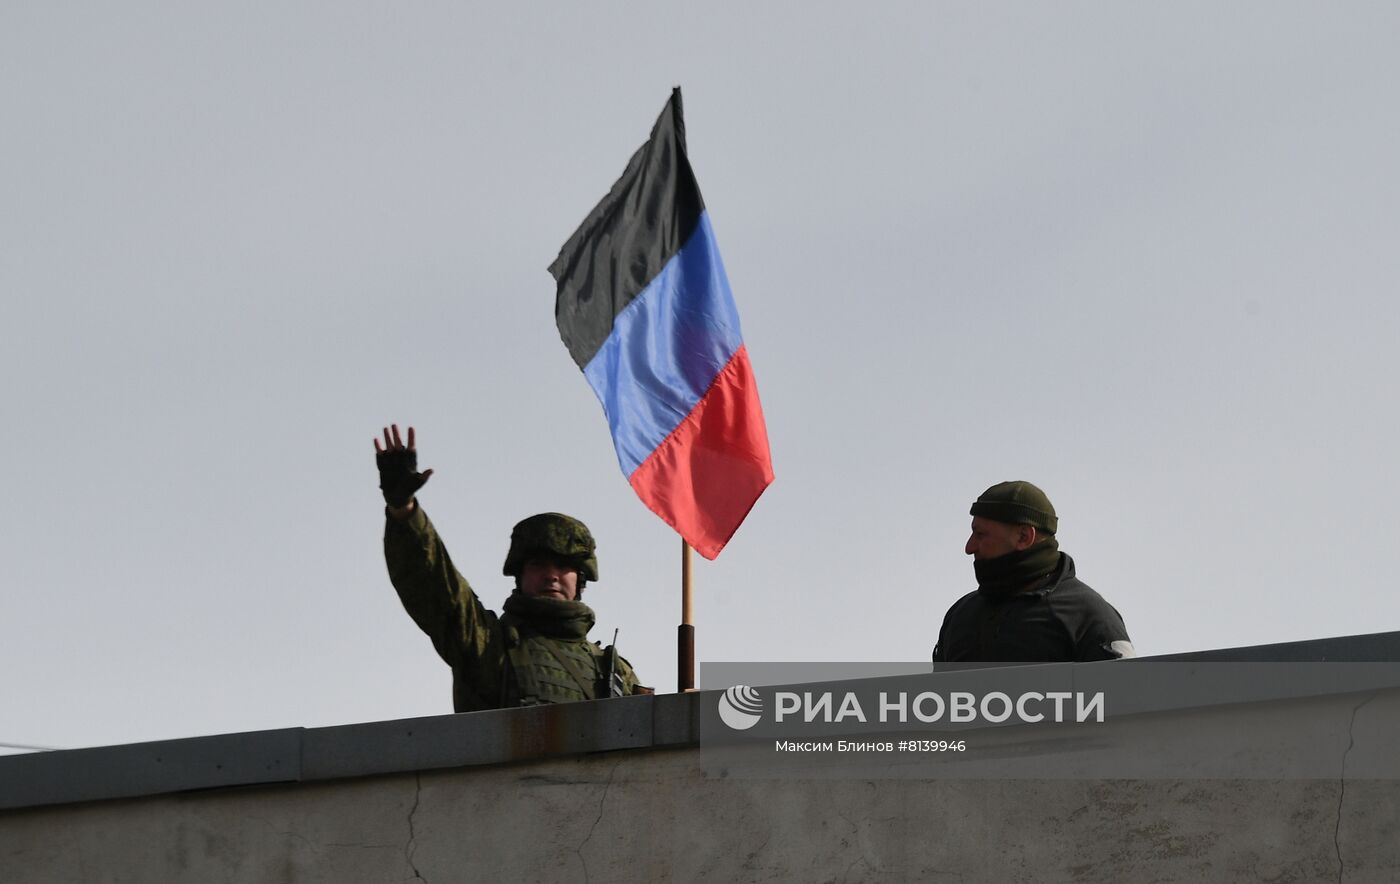 Налаживание мирной жизни в освобожденных населенных пунктах ДНР